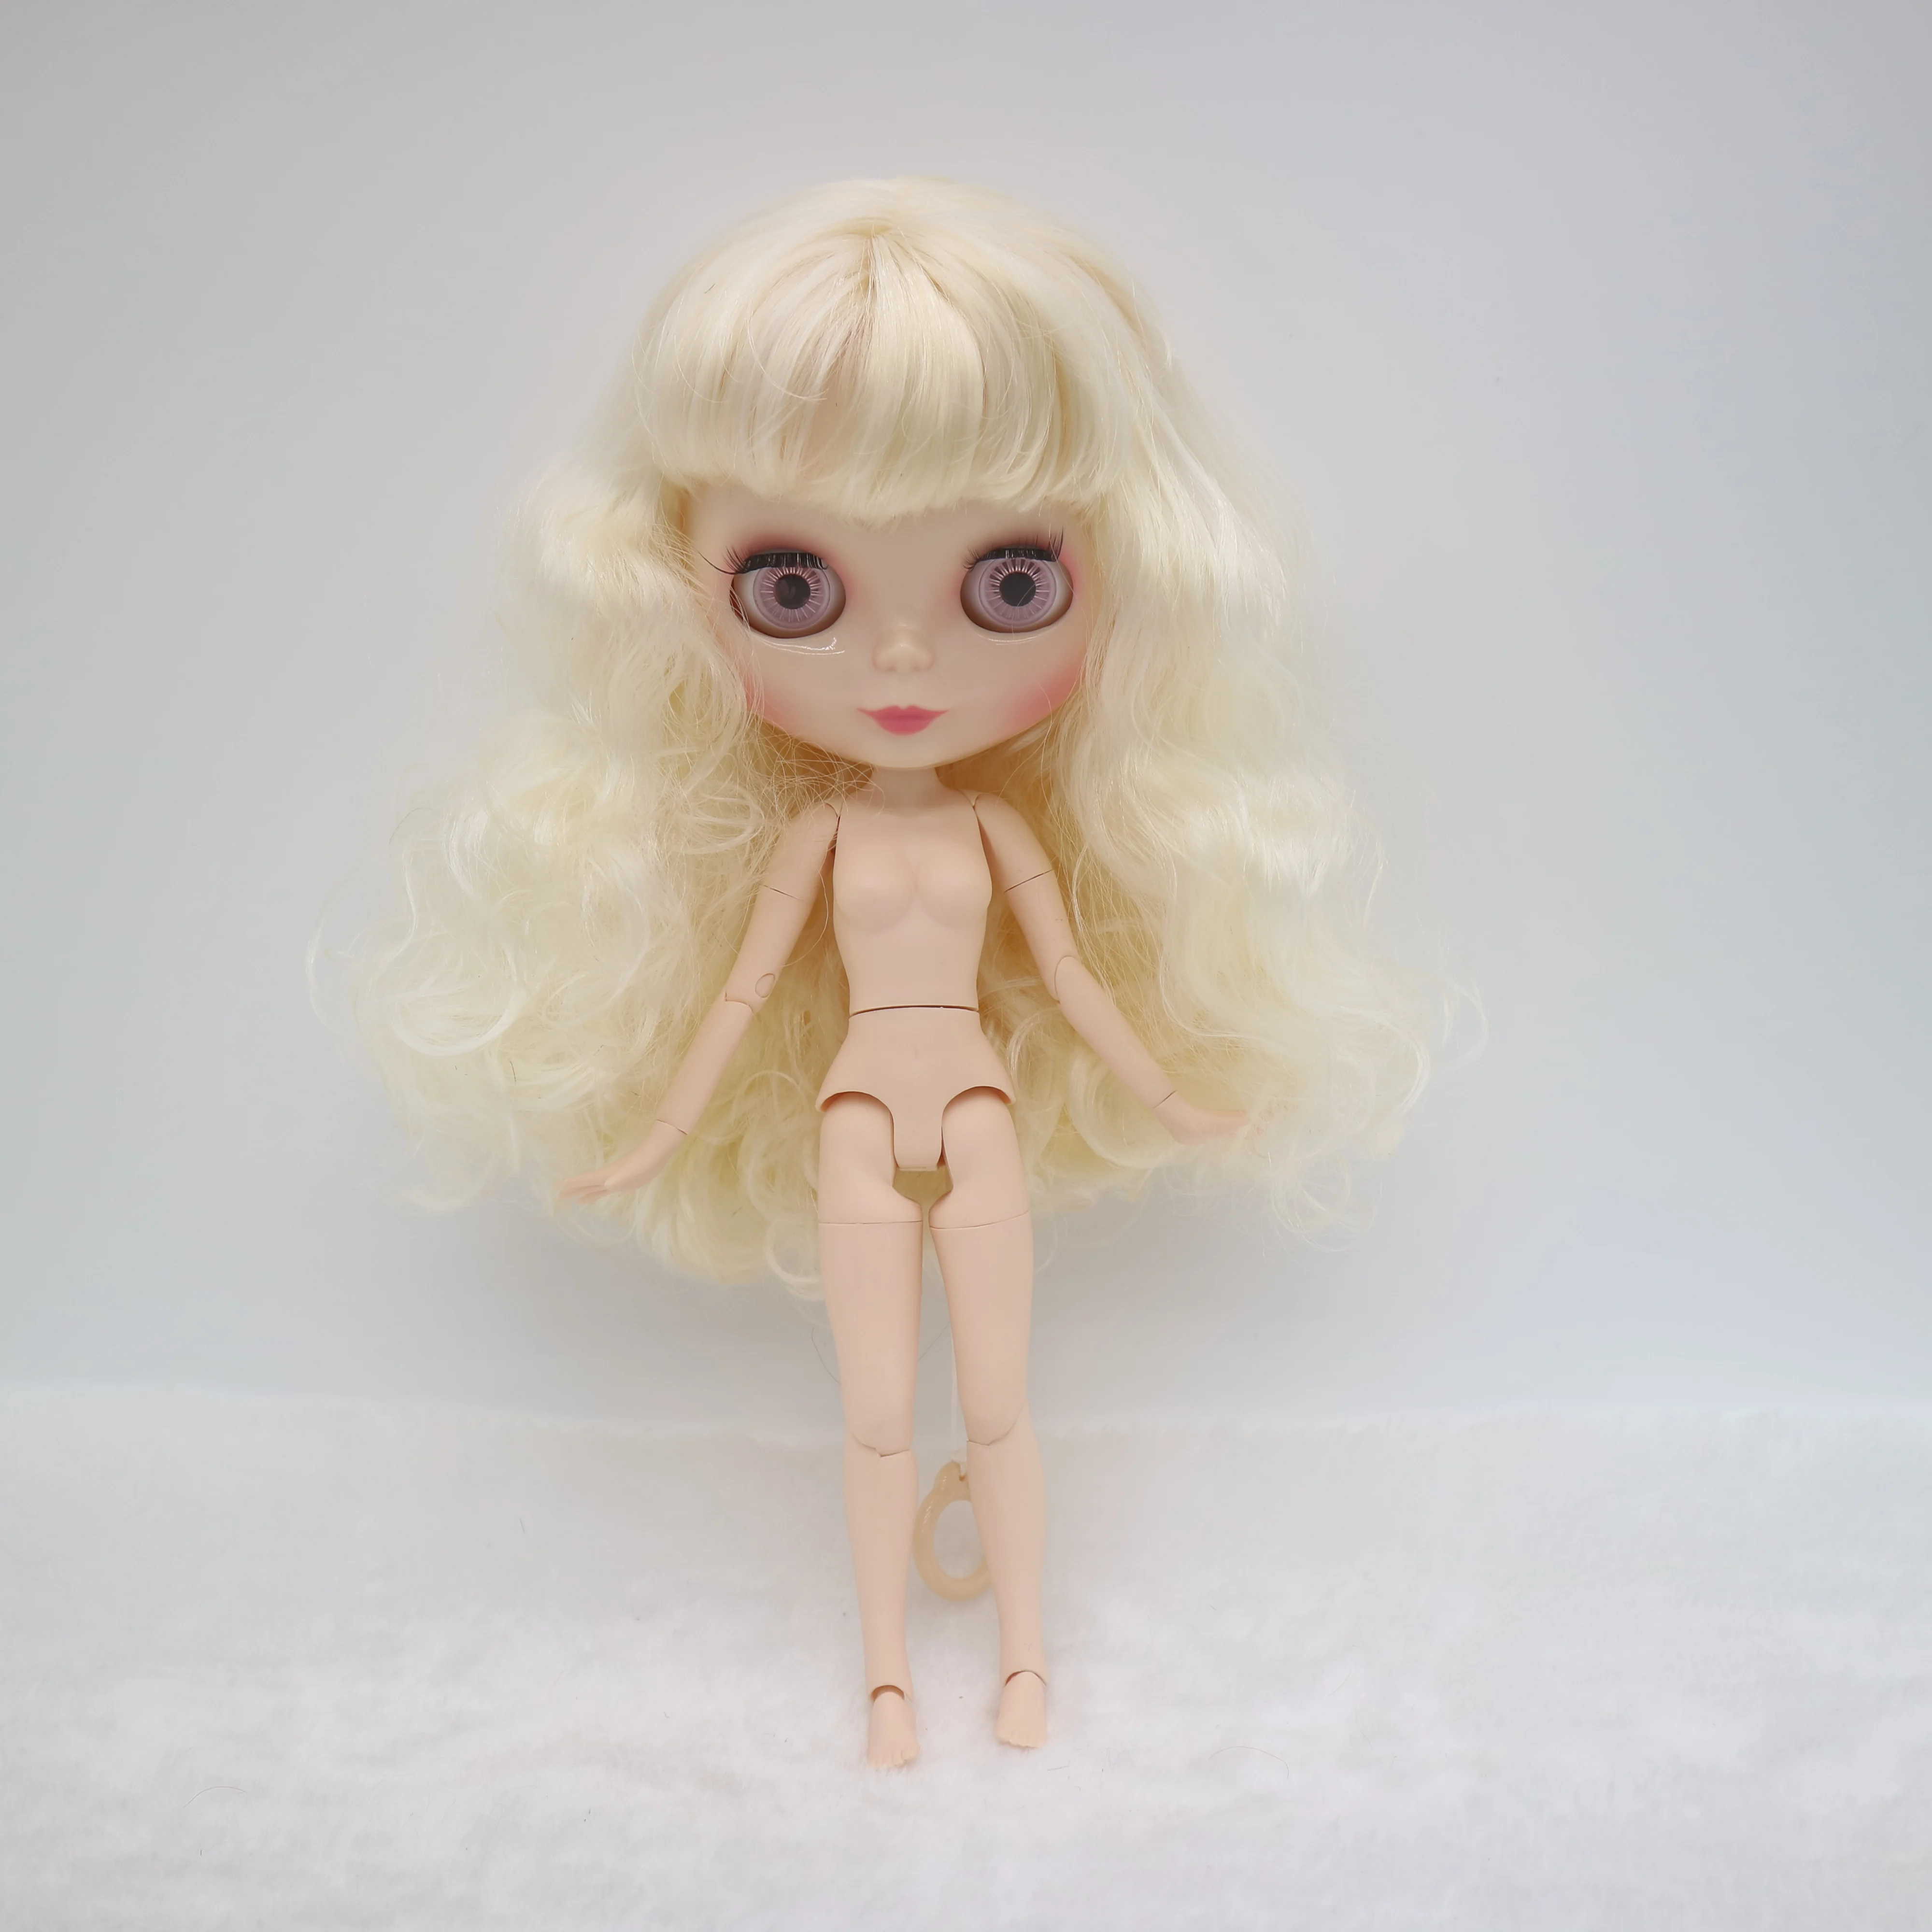 Кукла Blyth на заказ . куклы длиной 30 см со светлыми волосами Изображение 4